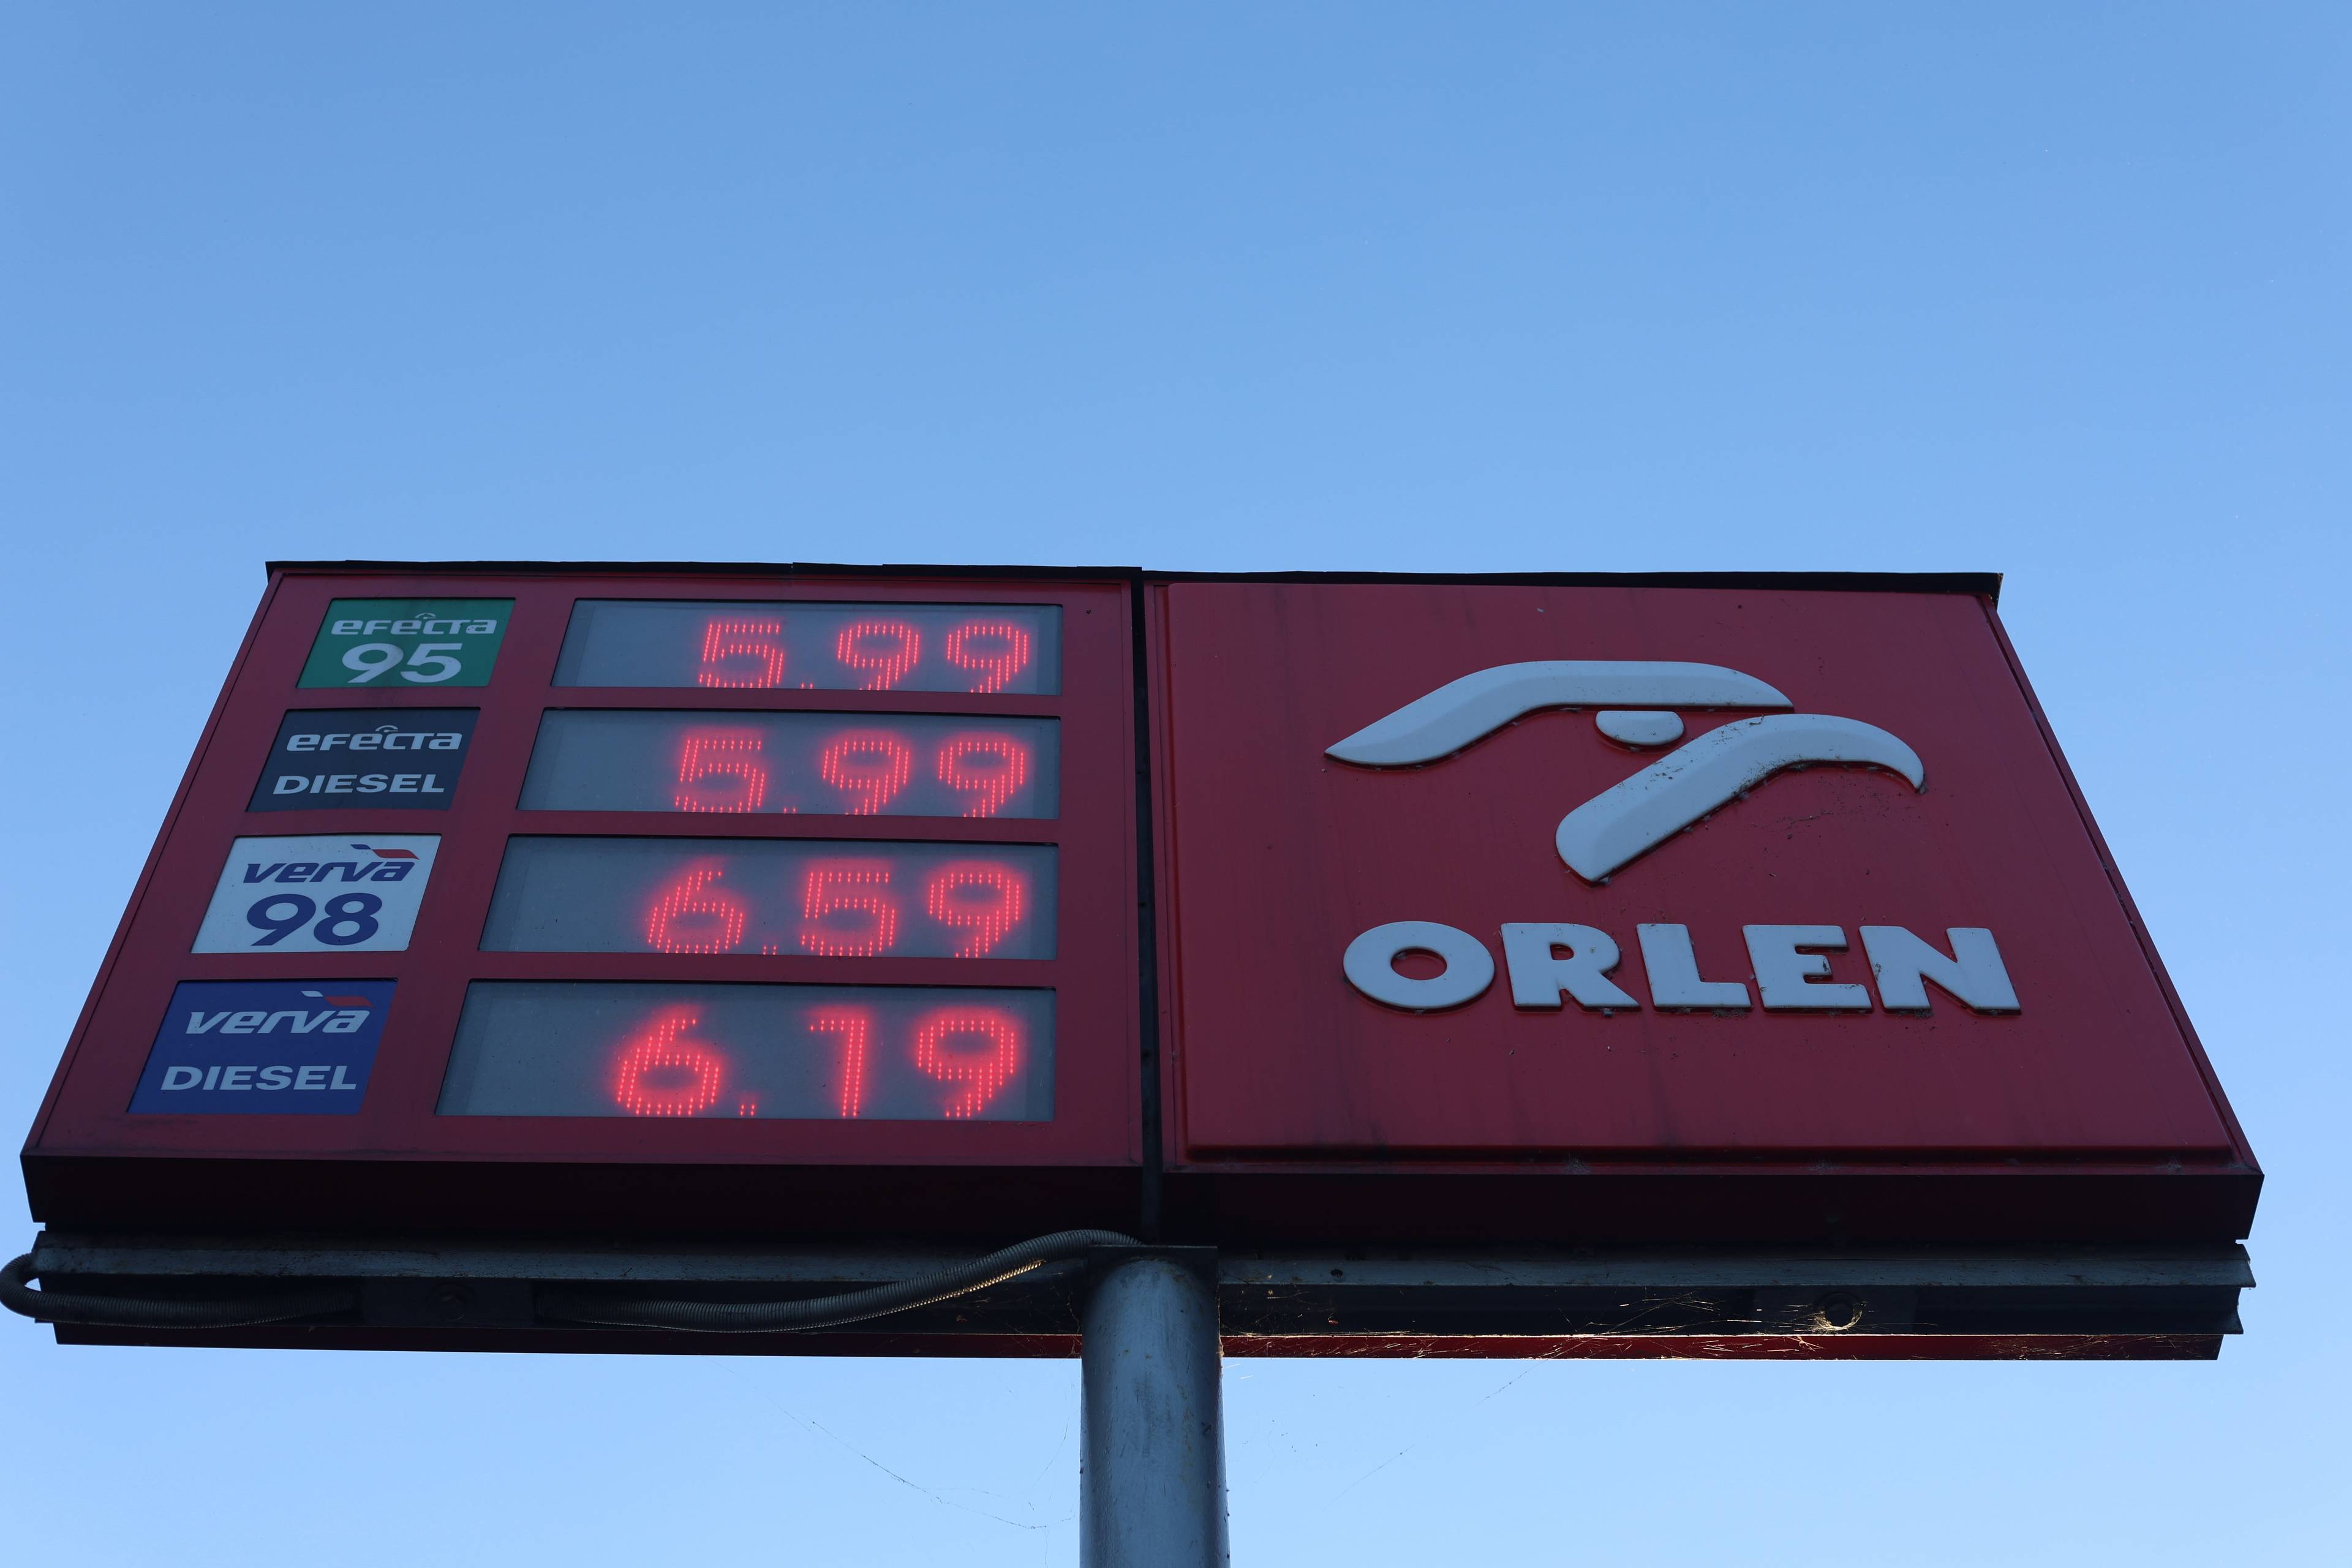 Tablica z cenami paliw Orlenu na tle niebieskiego, bezchmurnego nieba. Cena oleju napędowego to 5,99 zł